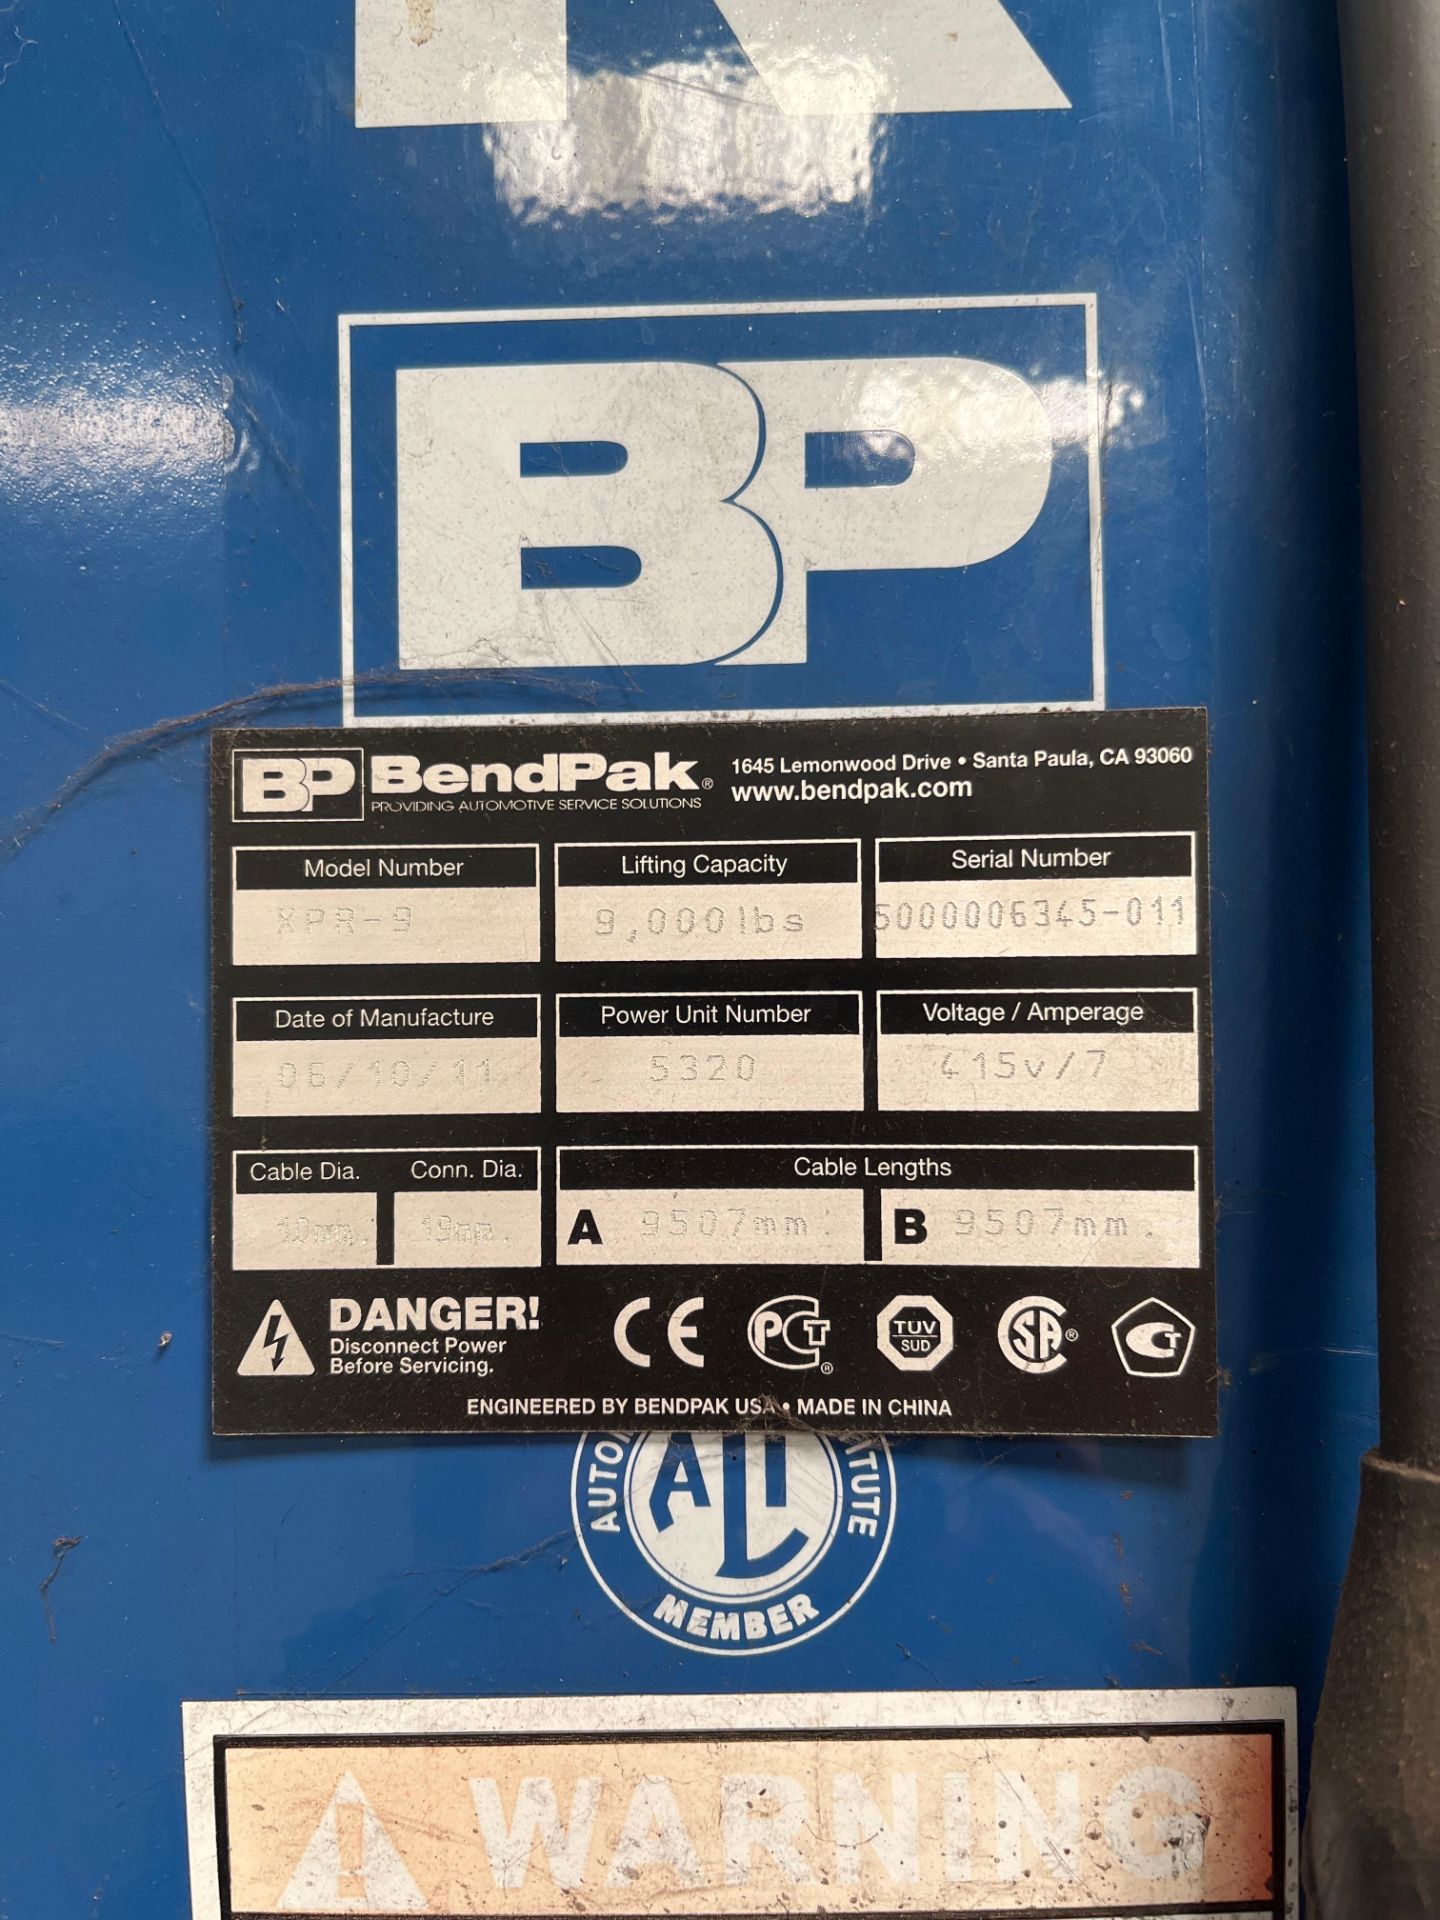 Bendpak twin post vehicle lift - Image 3 of 4